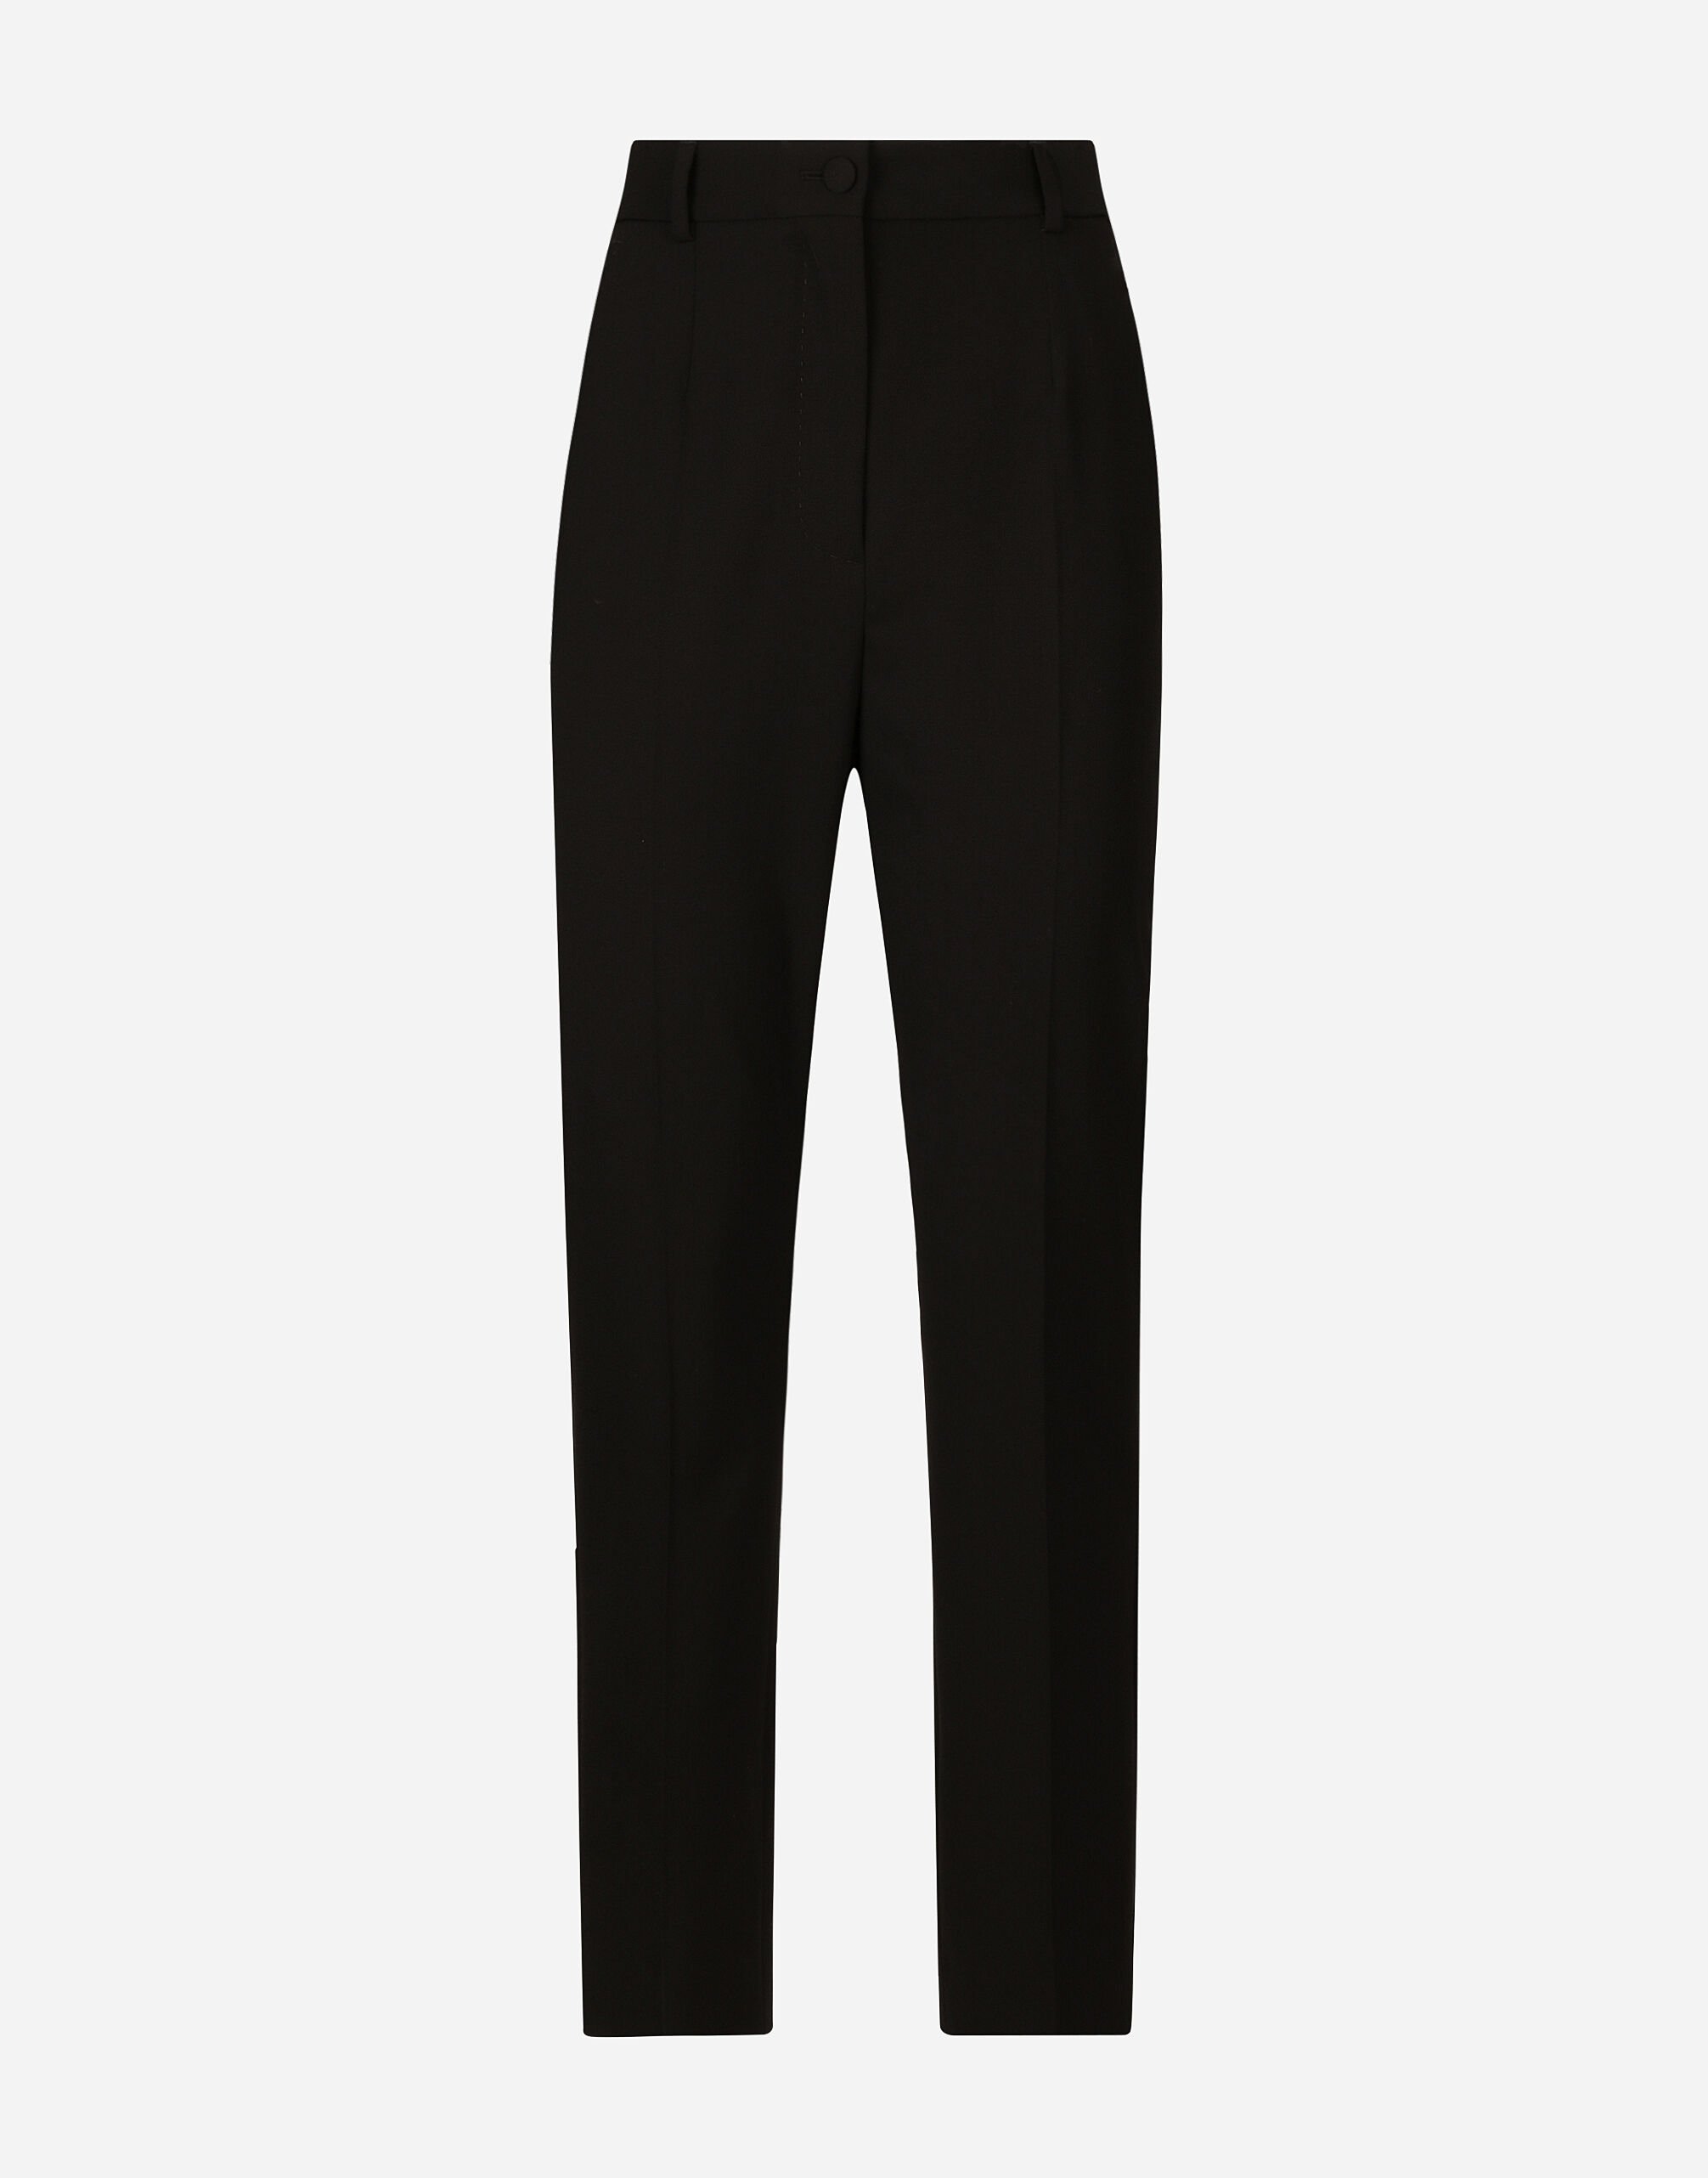 Dolce & Gabbana High-waisted wool pants Black BB6711AV893